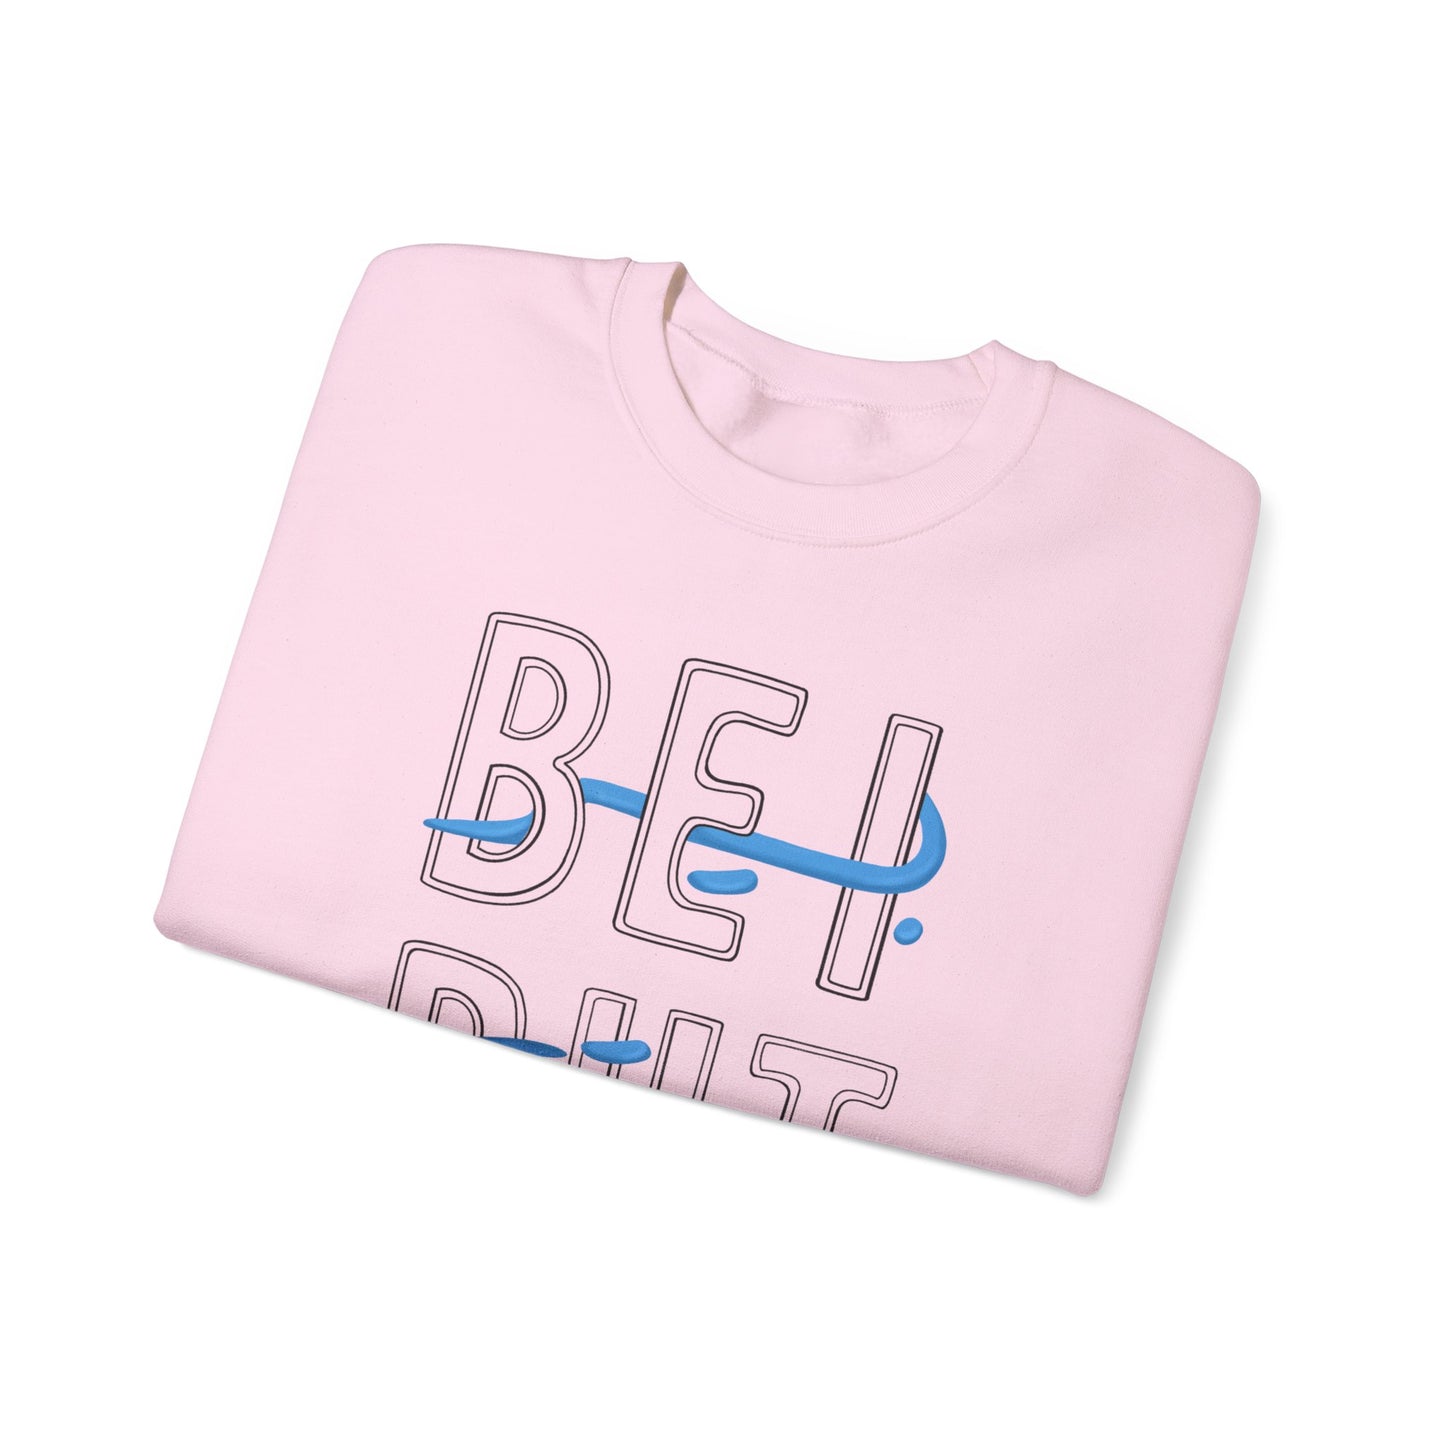 Adult | Lebanon Design | Crewneck Sweatshirt